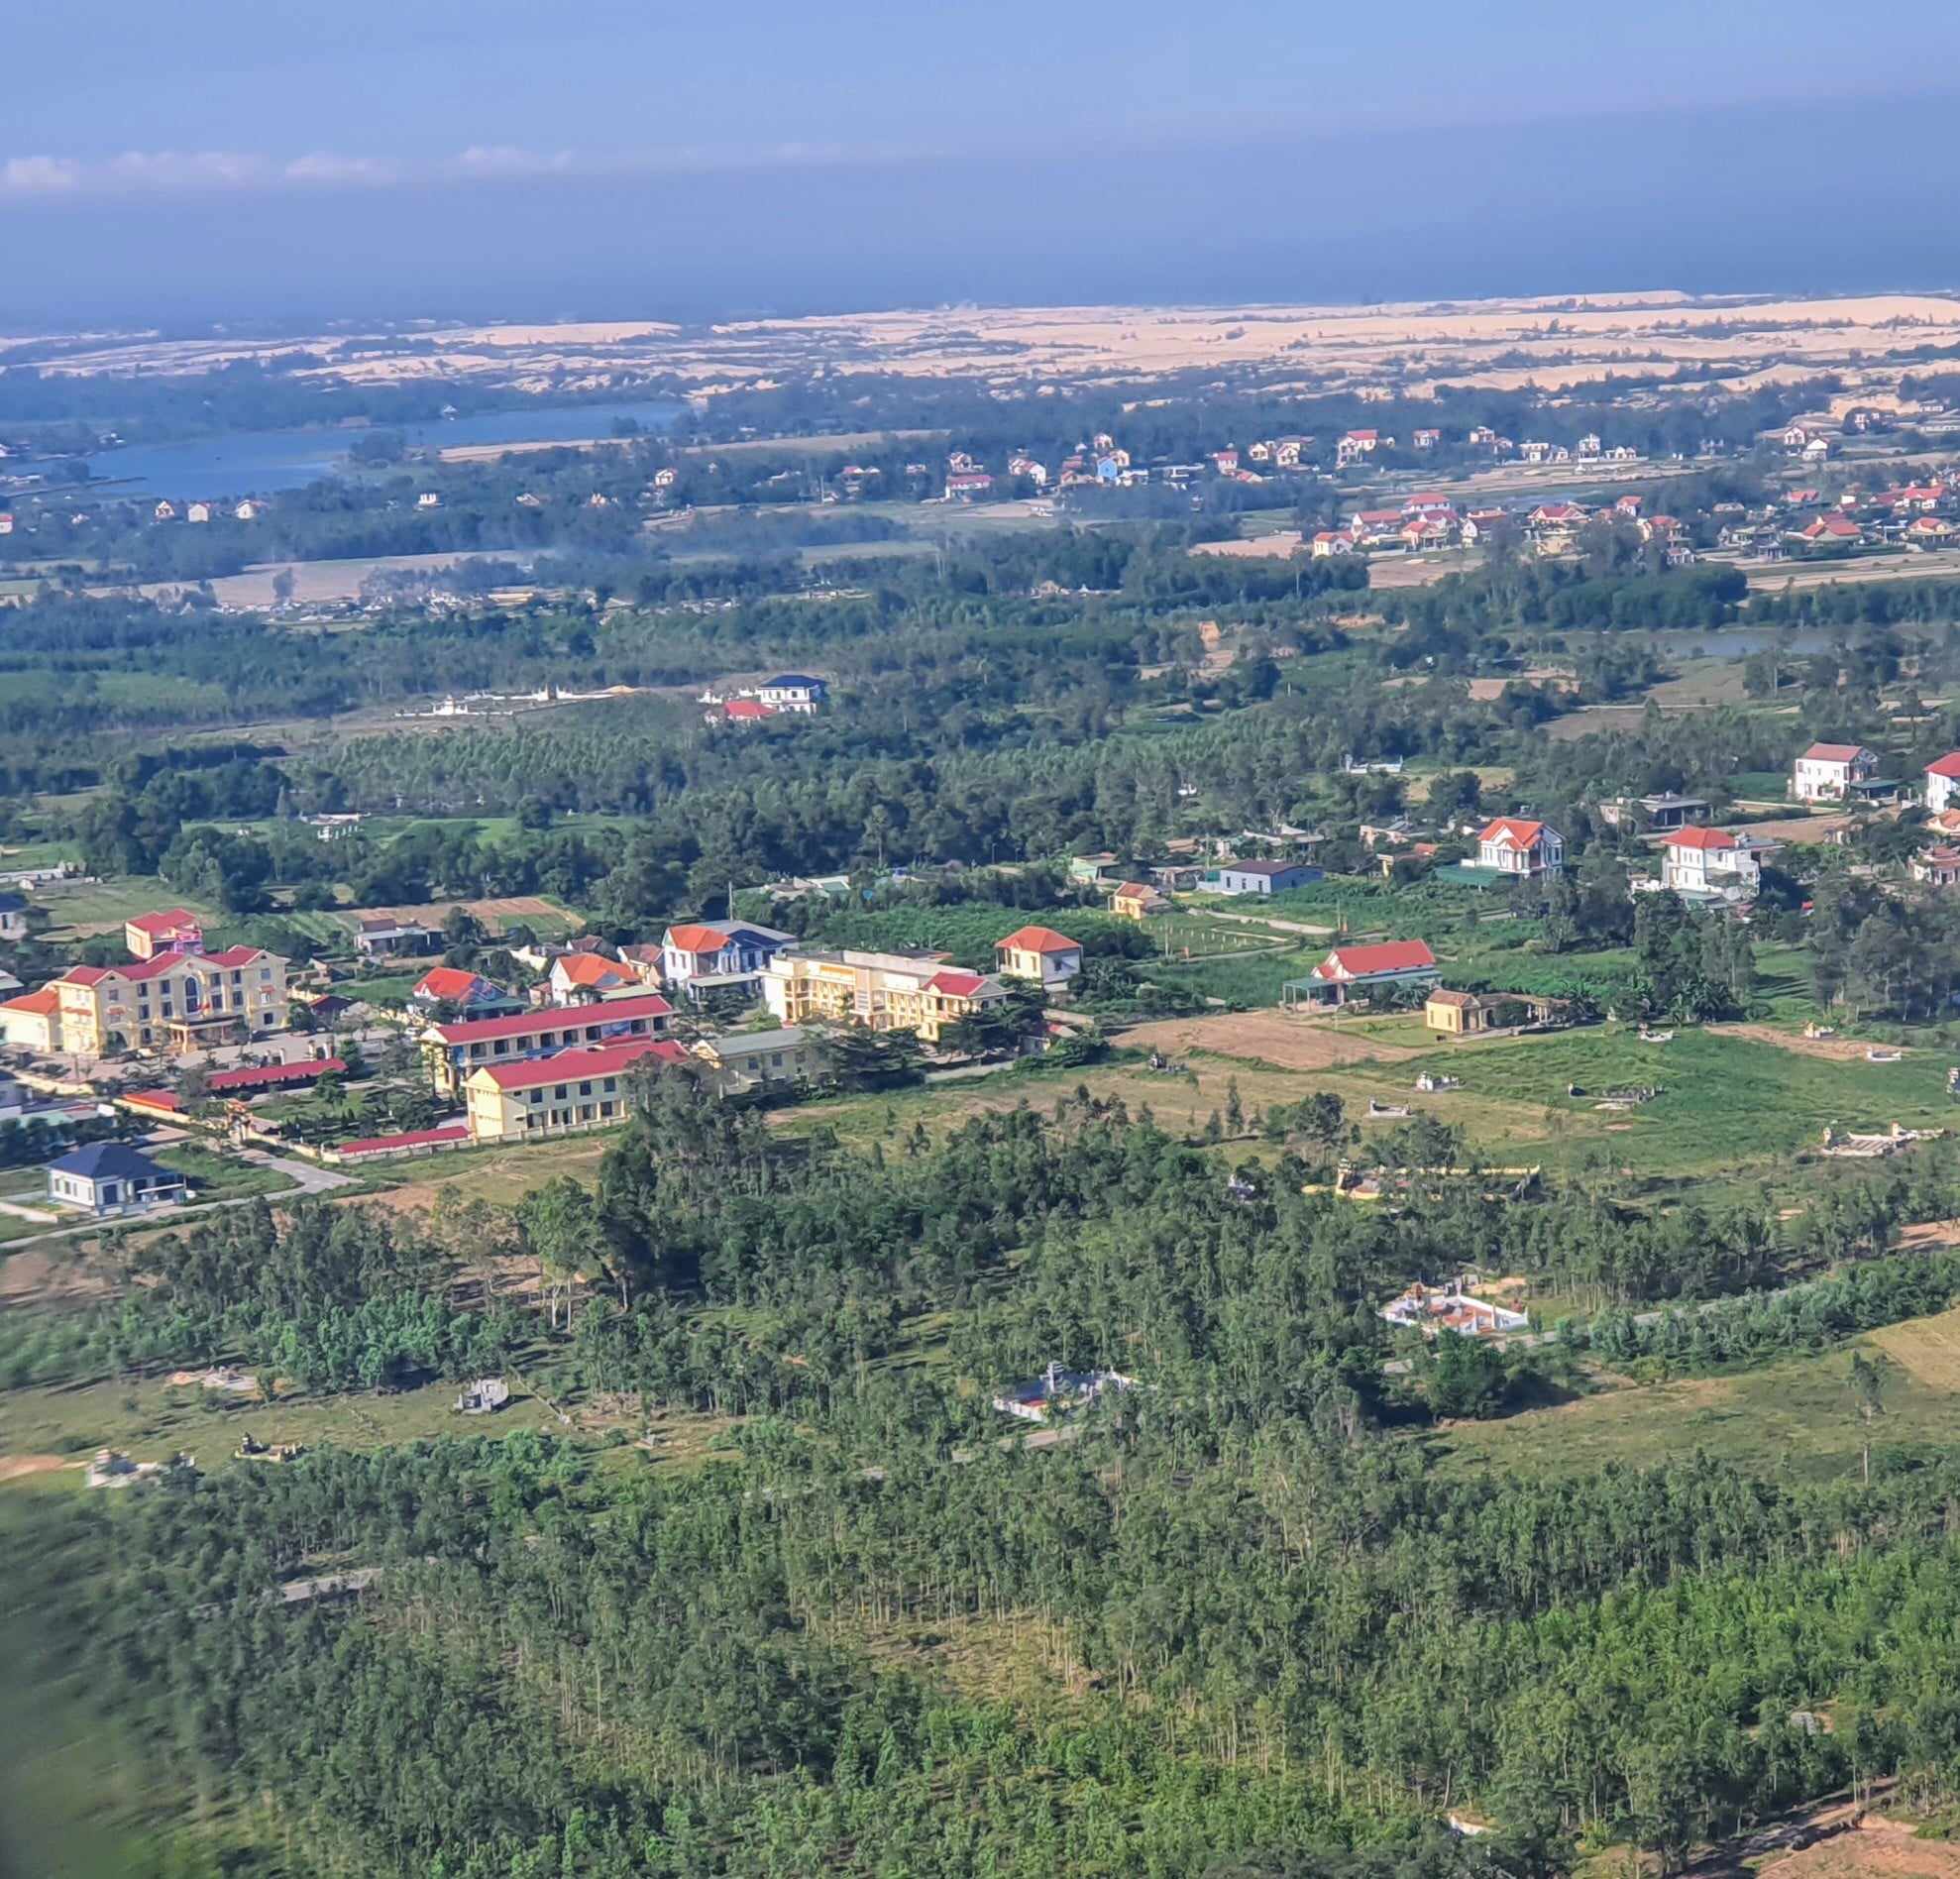 Xã Lý Trach, huyện Bố Trạch, tỉnh Quảng Bình nơi xảy ra sai phạm trong quản lý đất đai.